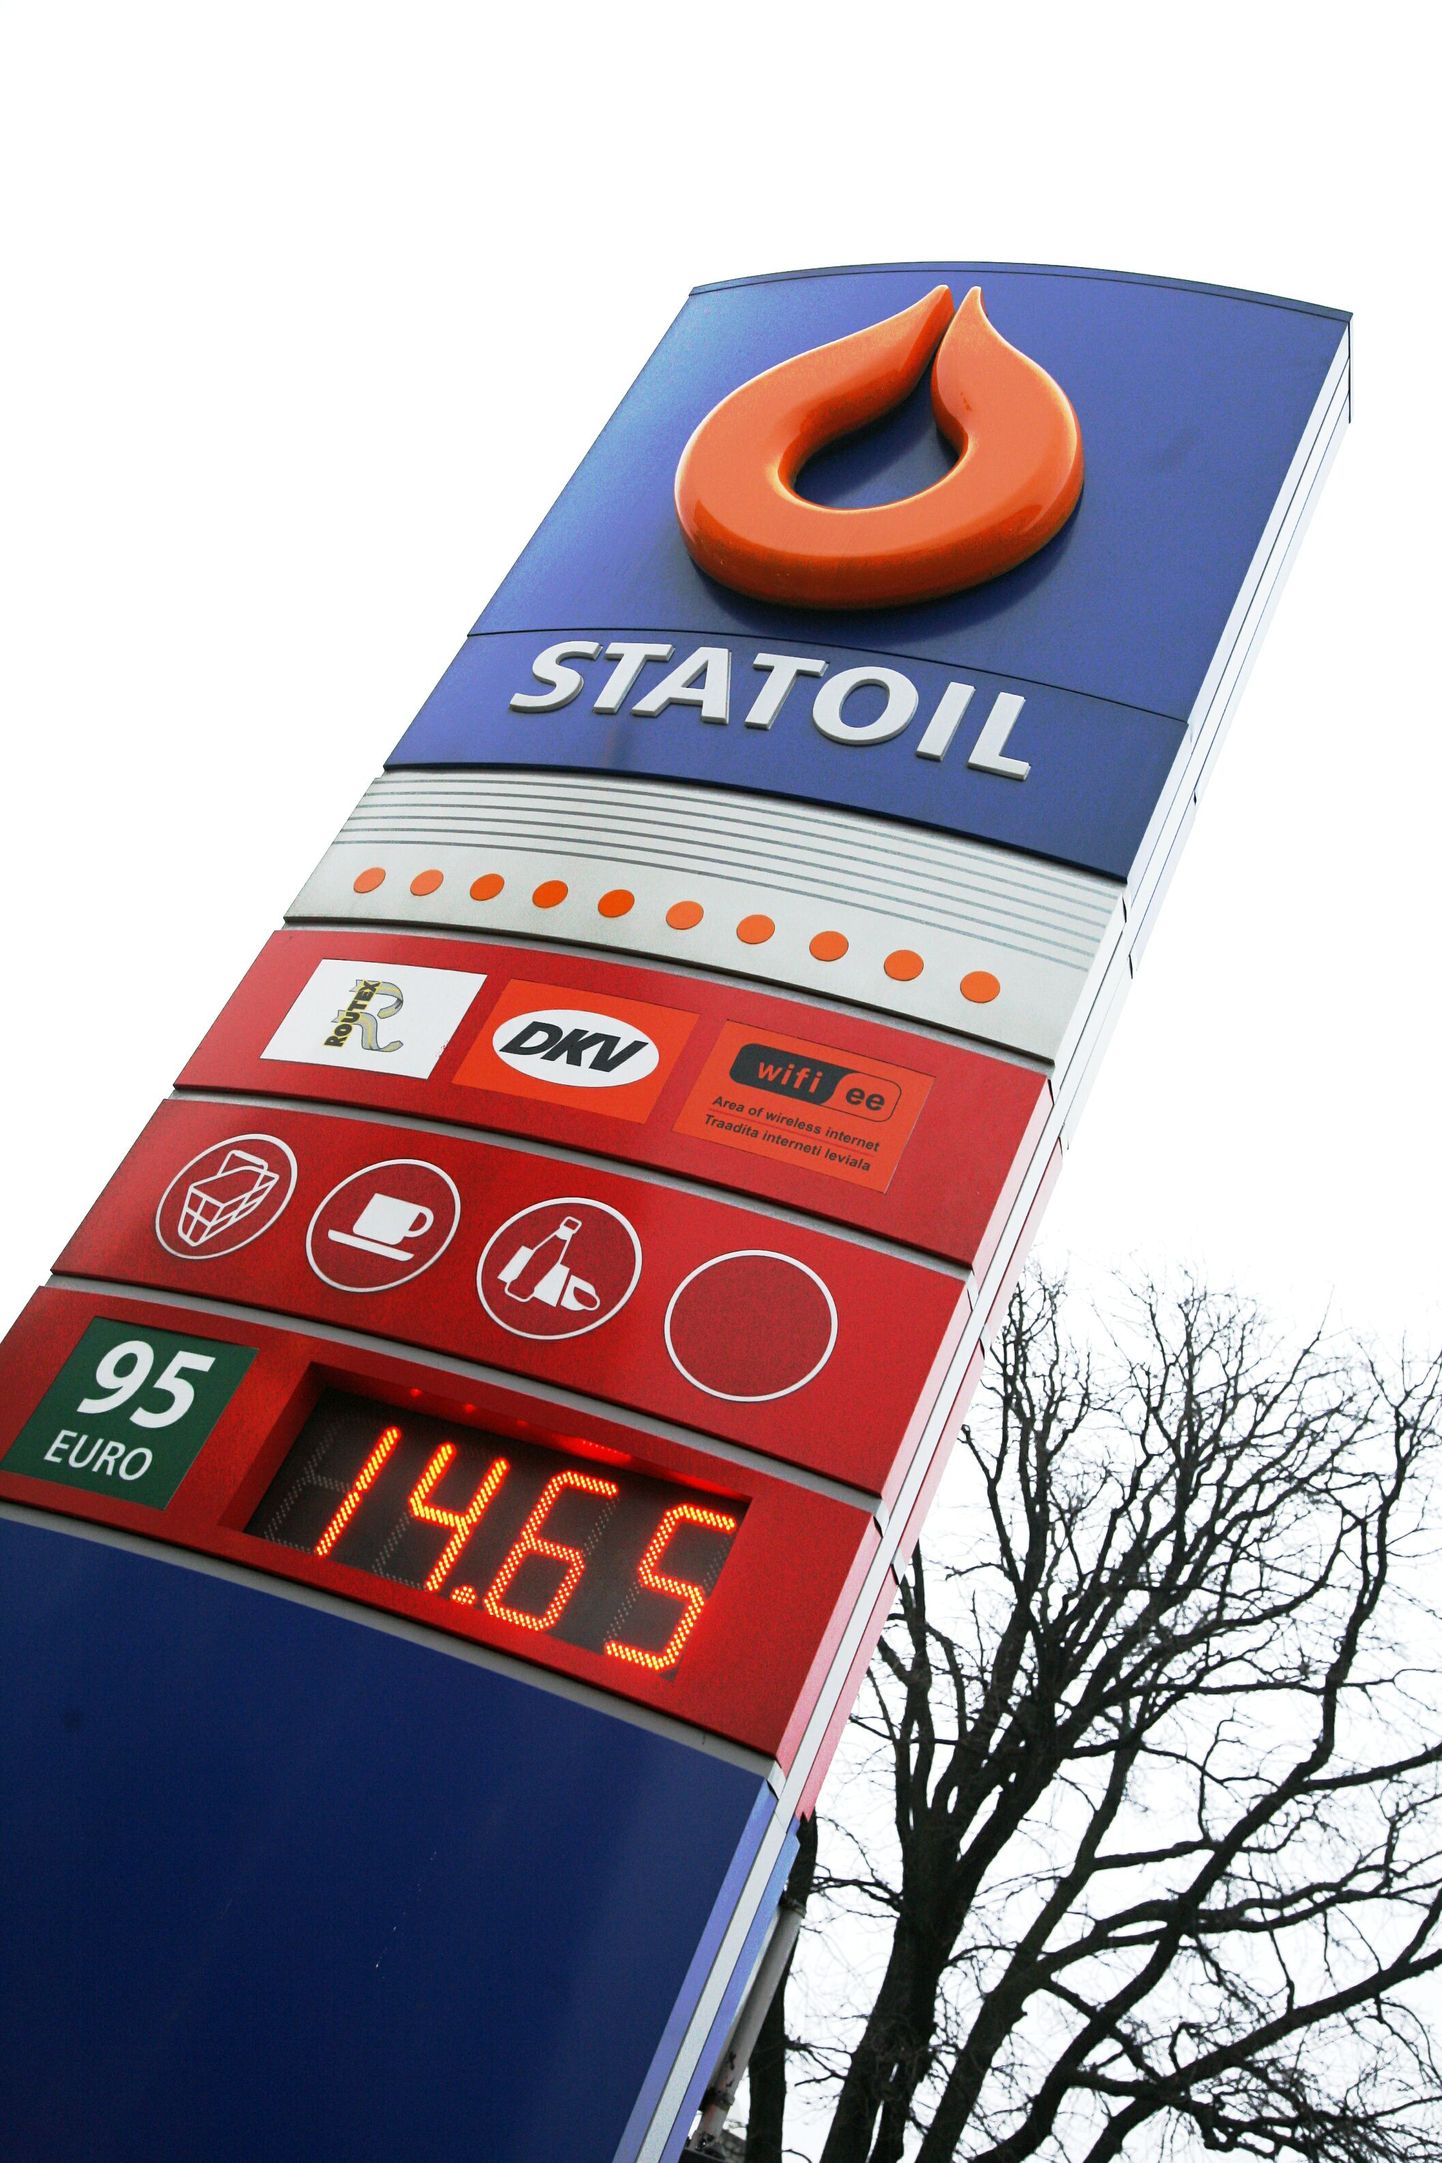 Kütusemüüja Statoil muutis WC külastamise tasuliseks.